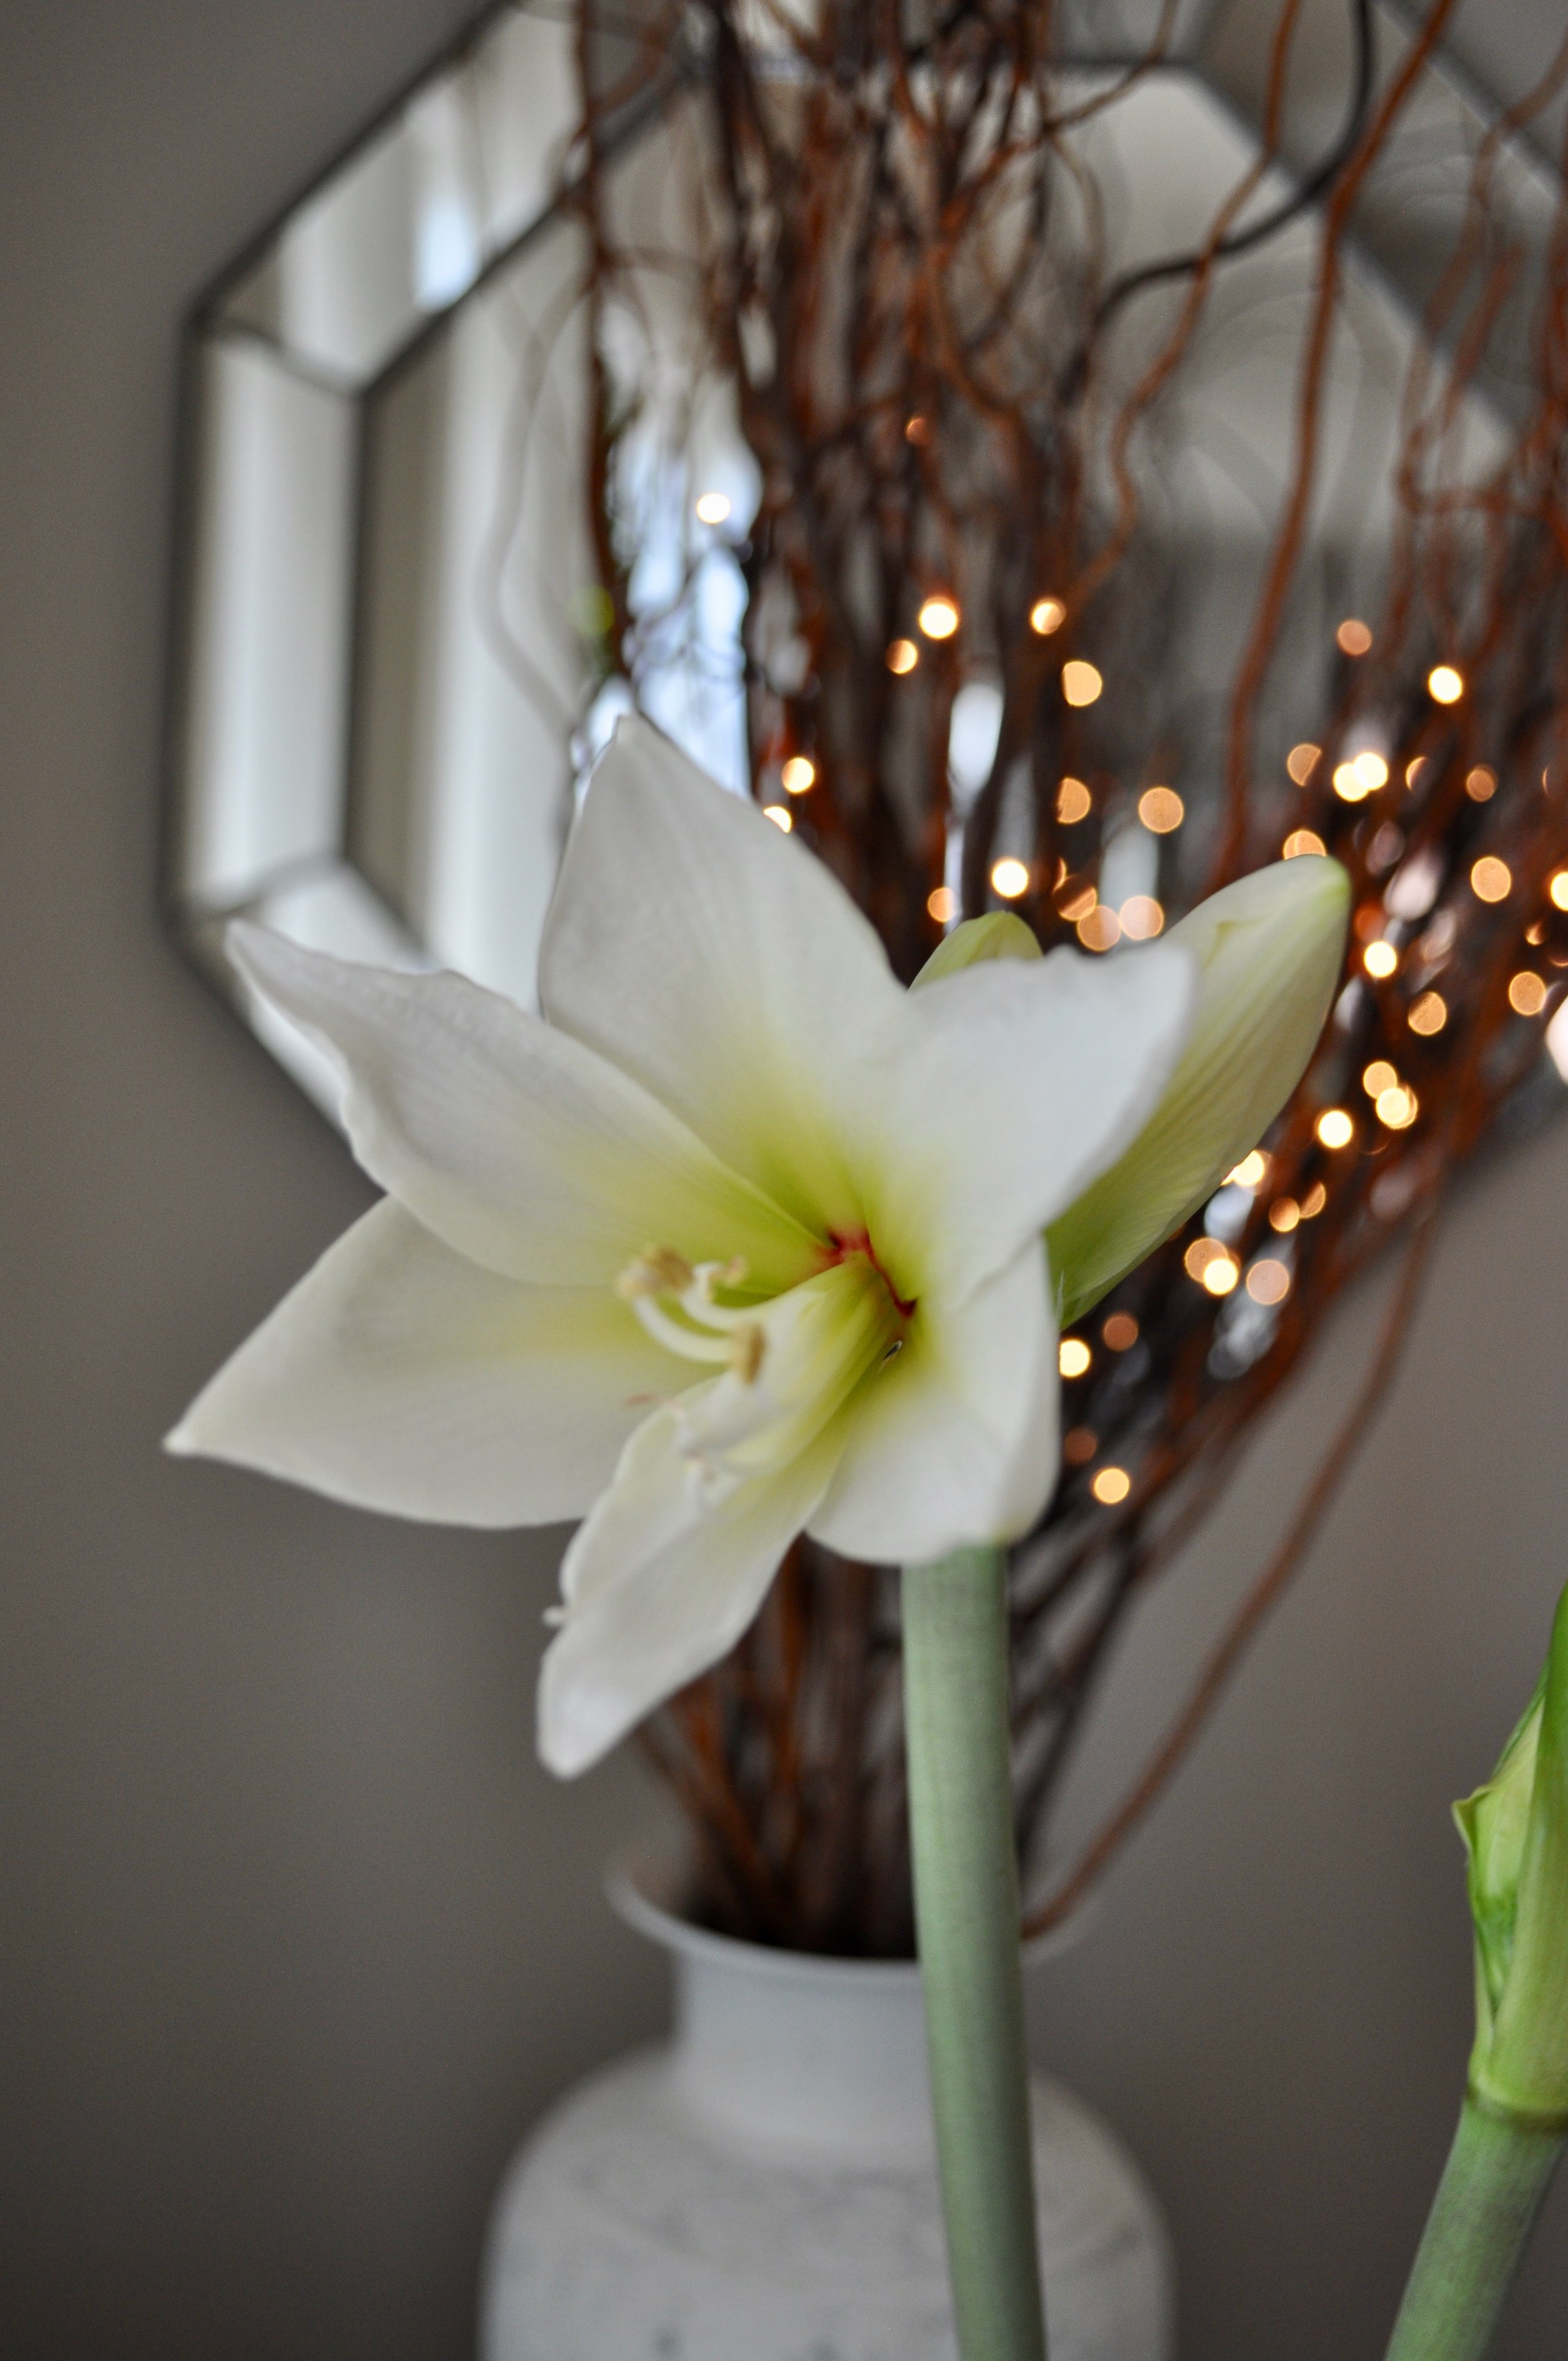 A blooming amaryllis